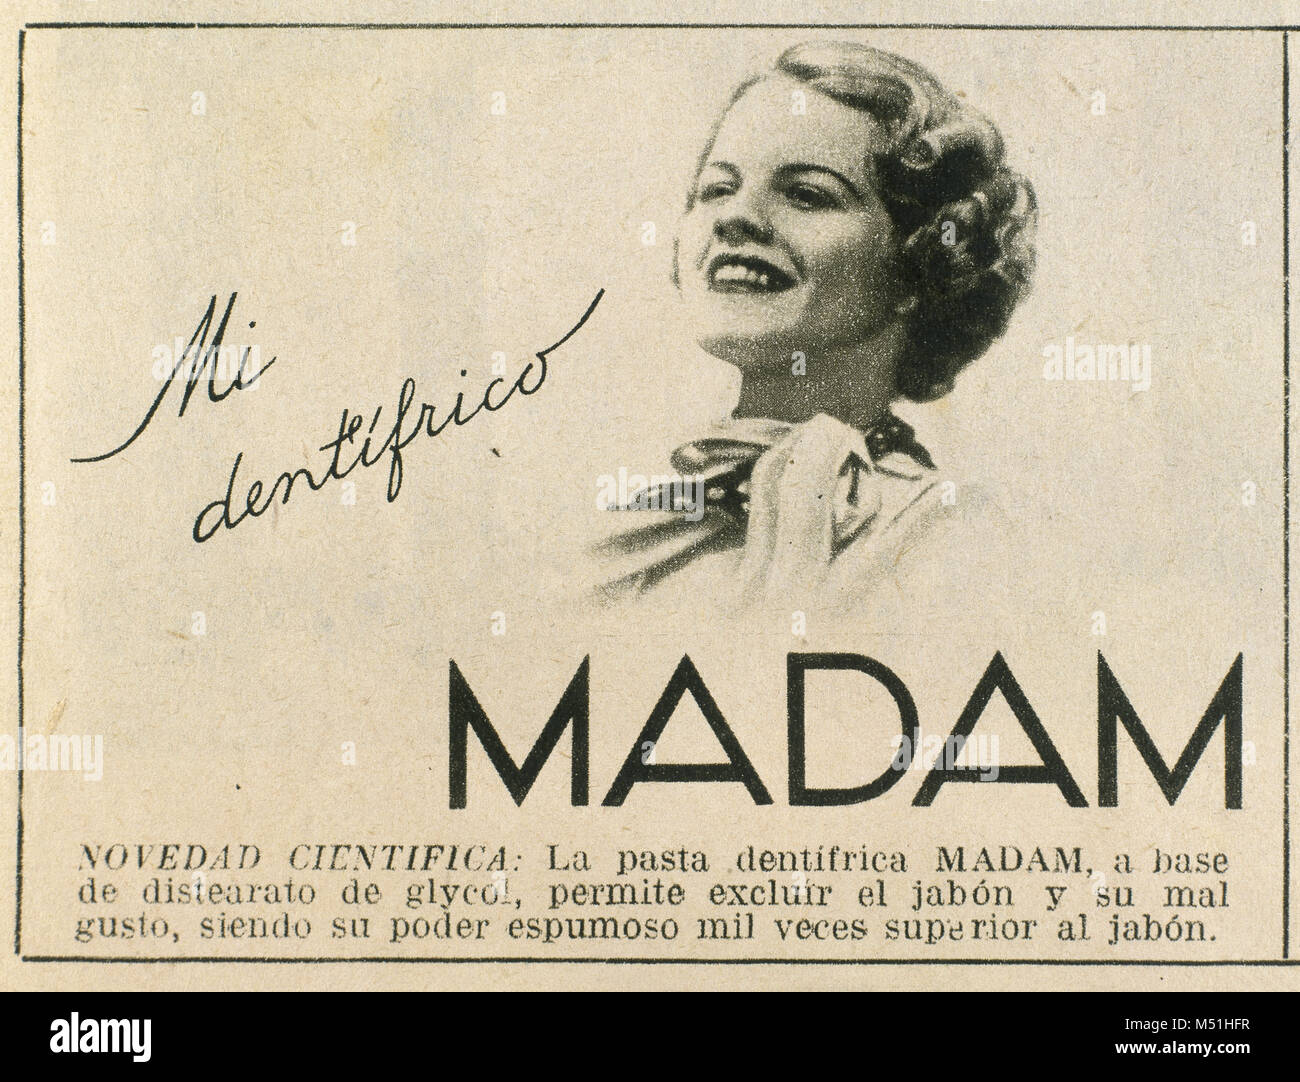 Vecchia pubblicità commerciale del 'Madam' marca di dentifricio, pubblicato nel giornale La Vanguardia, 31 marzo, 1936. Barcellona, in Catalogna, Spagna. Foto Stock